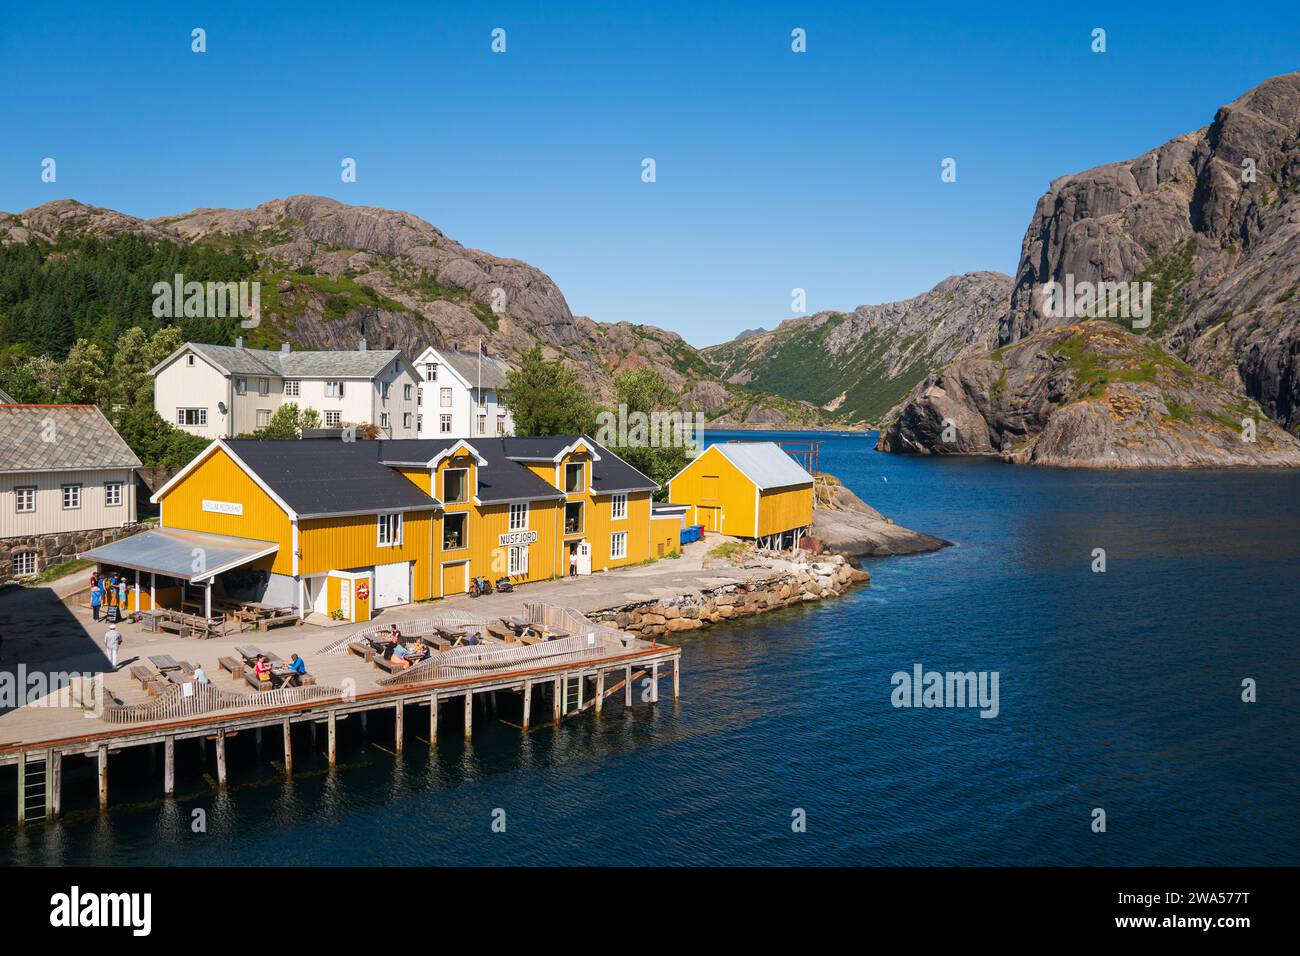 Le petit village de Nusfjord sur la côte sud des Lofoten, par une belle journée d'été, bateaux de pêche et voiliers côtoient des maisons colorées. Banque D'Images